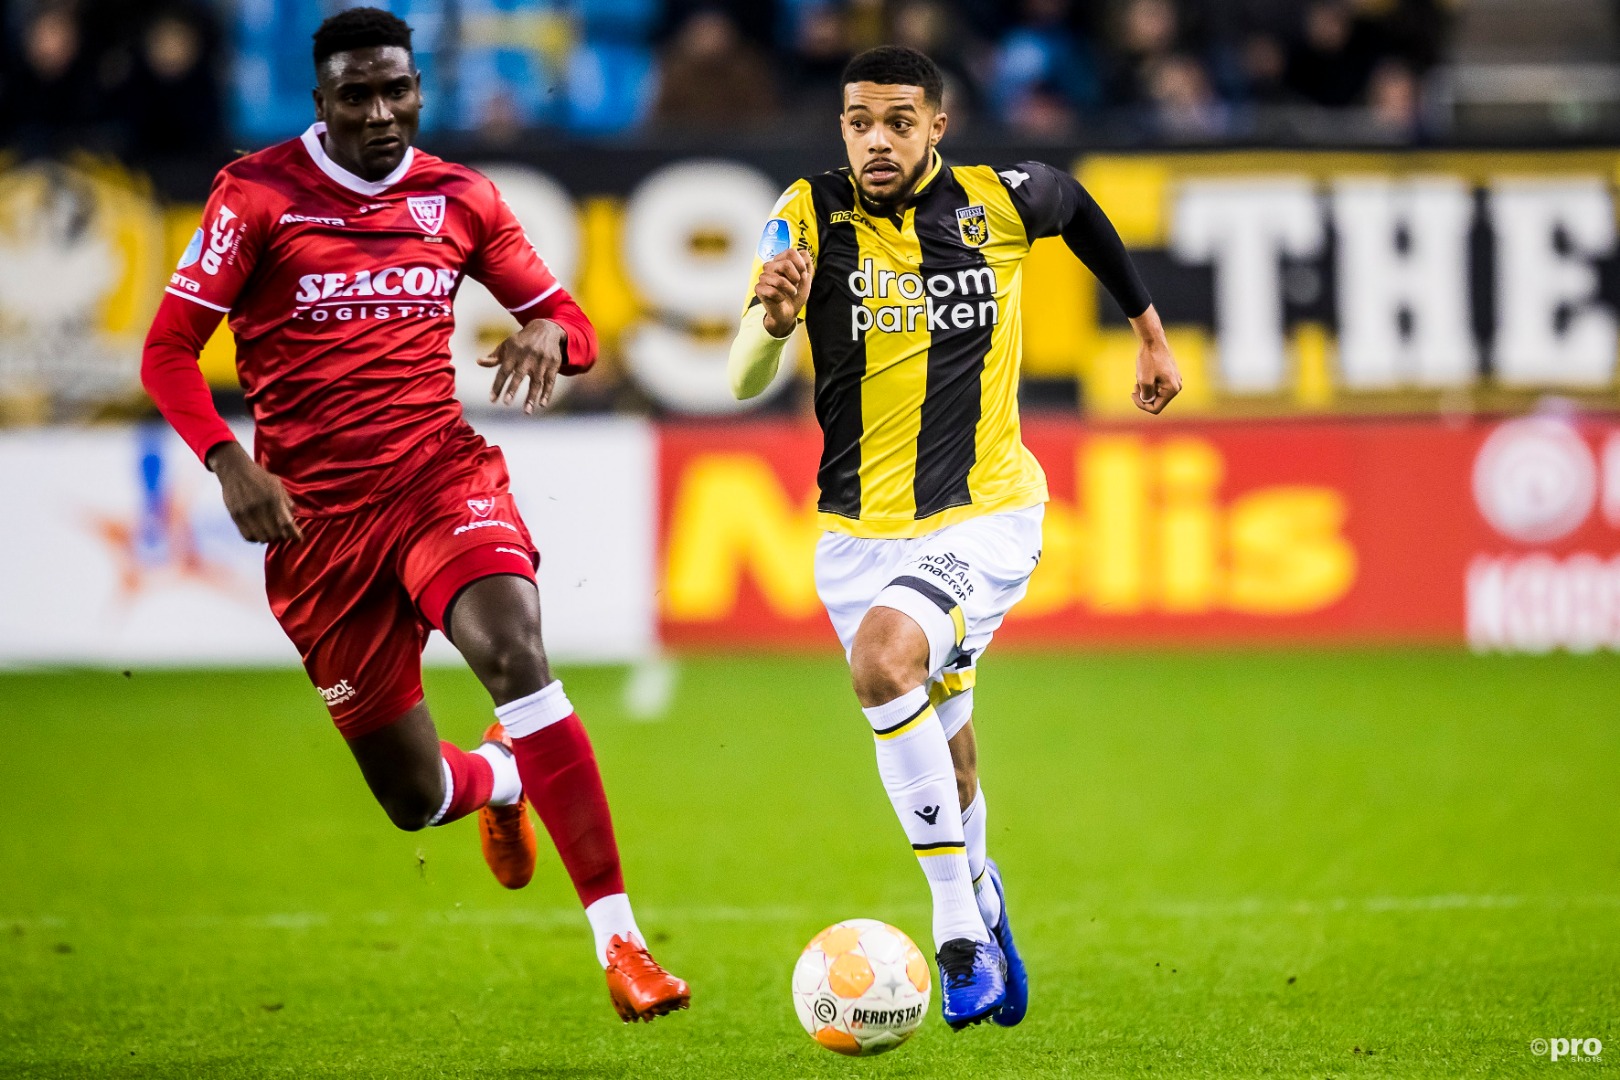 VVV Venlo và Vitesse hứa hẹn sẽ mang tới cho người hâm mộ 1 trận cầu mãn nhãn trong ngày thi đấu cuối cùng của giải đấu.